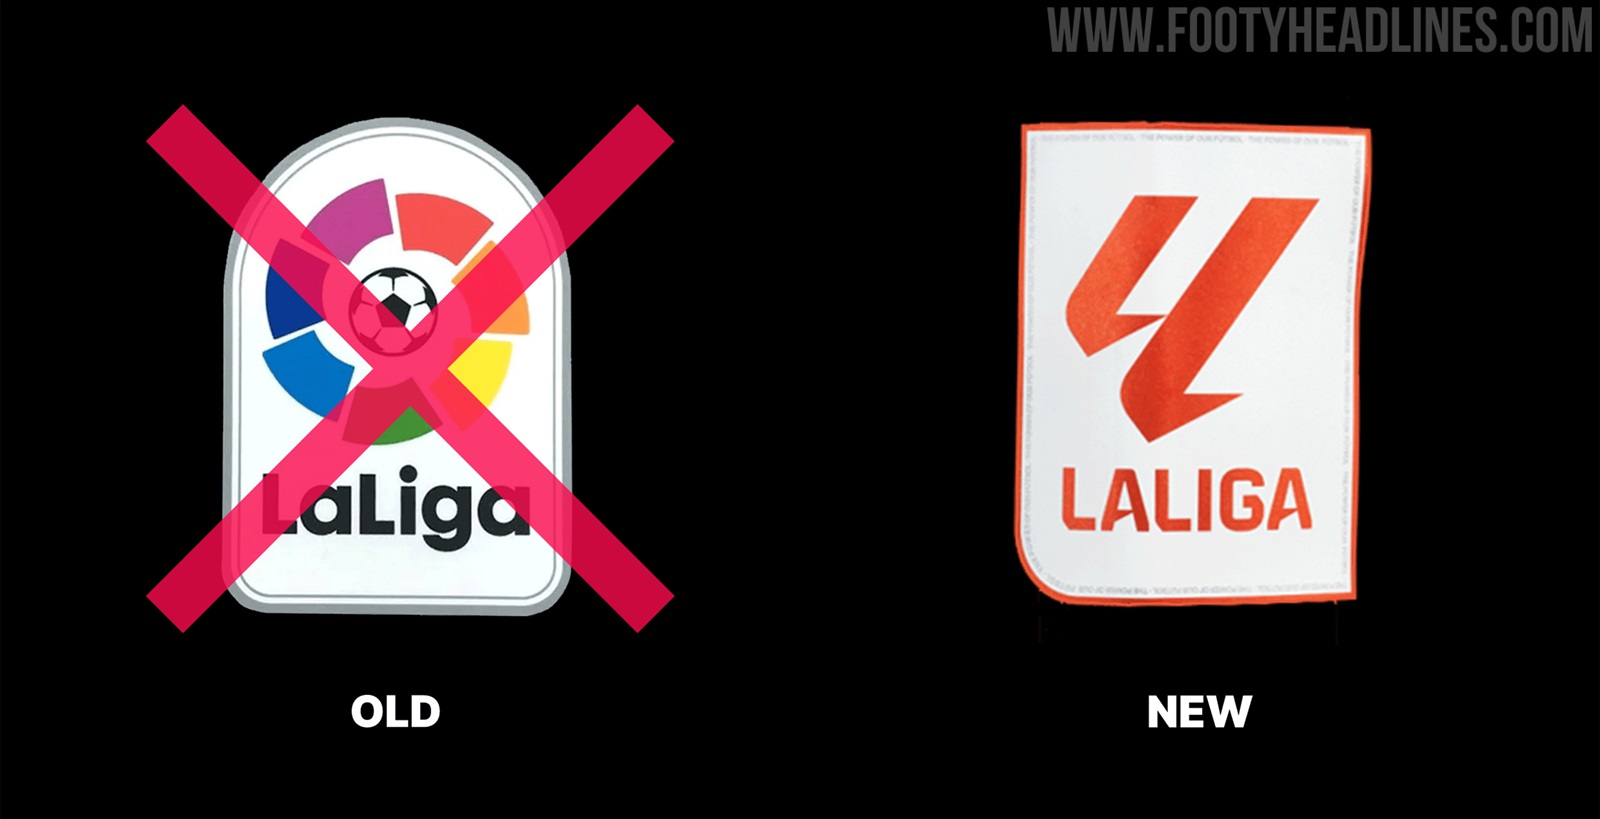 Neues La Liga Trikot-Ärmelabzeichen enthüllt - Nur Fussball